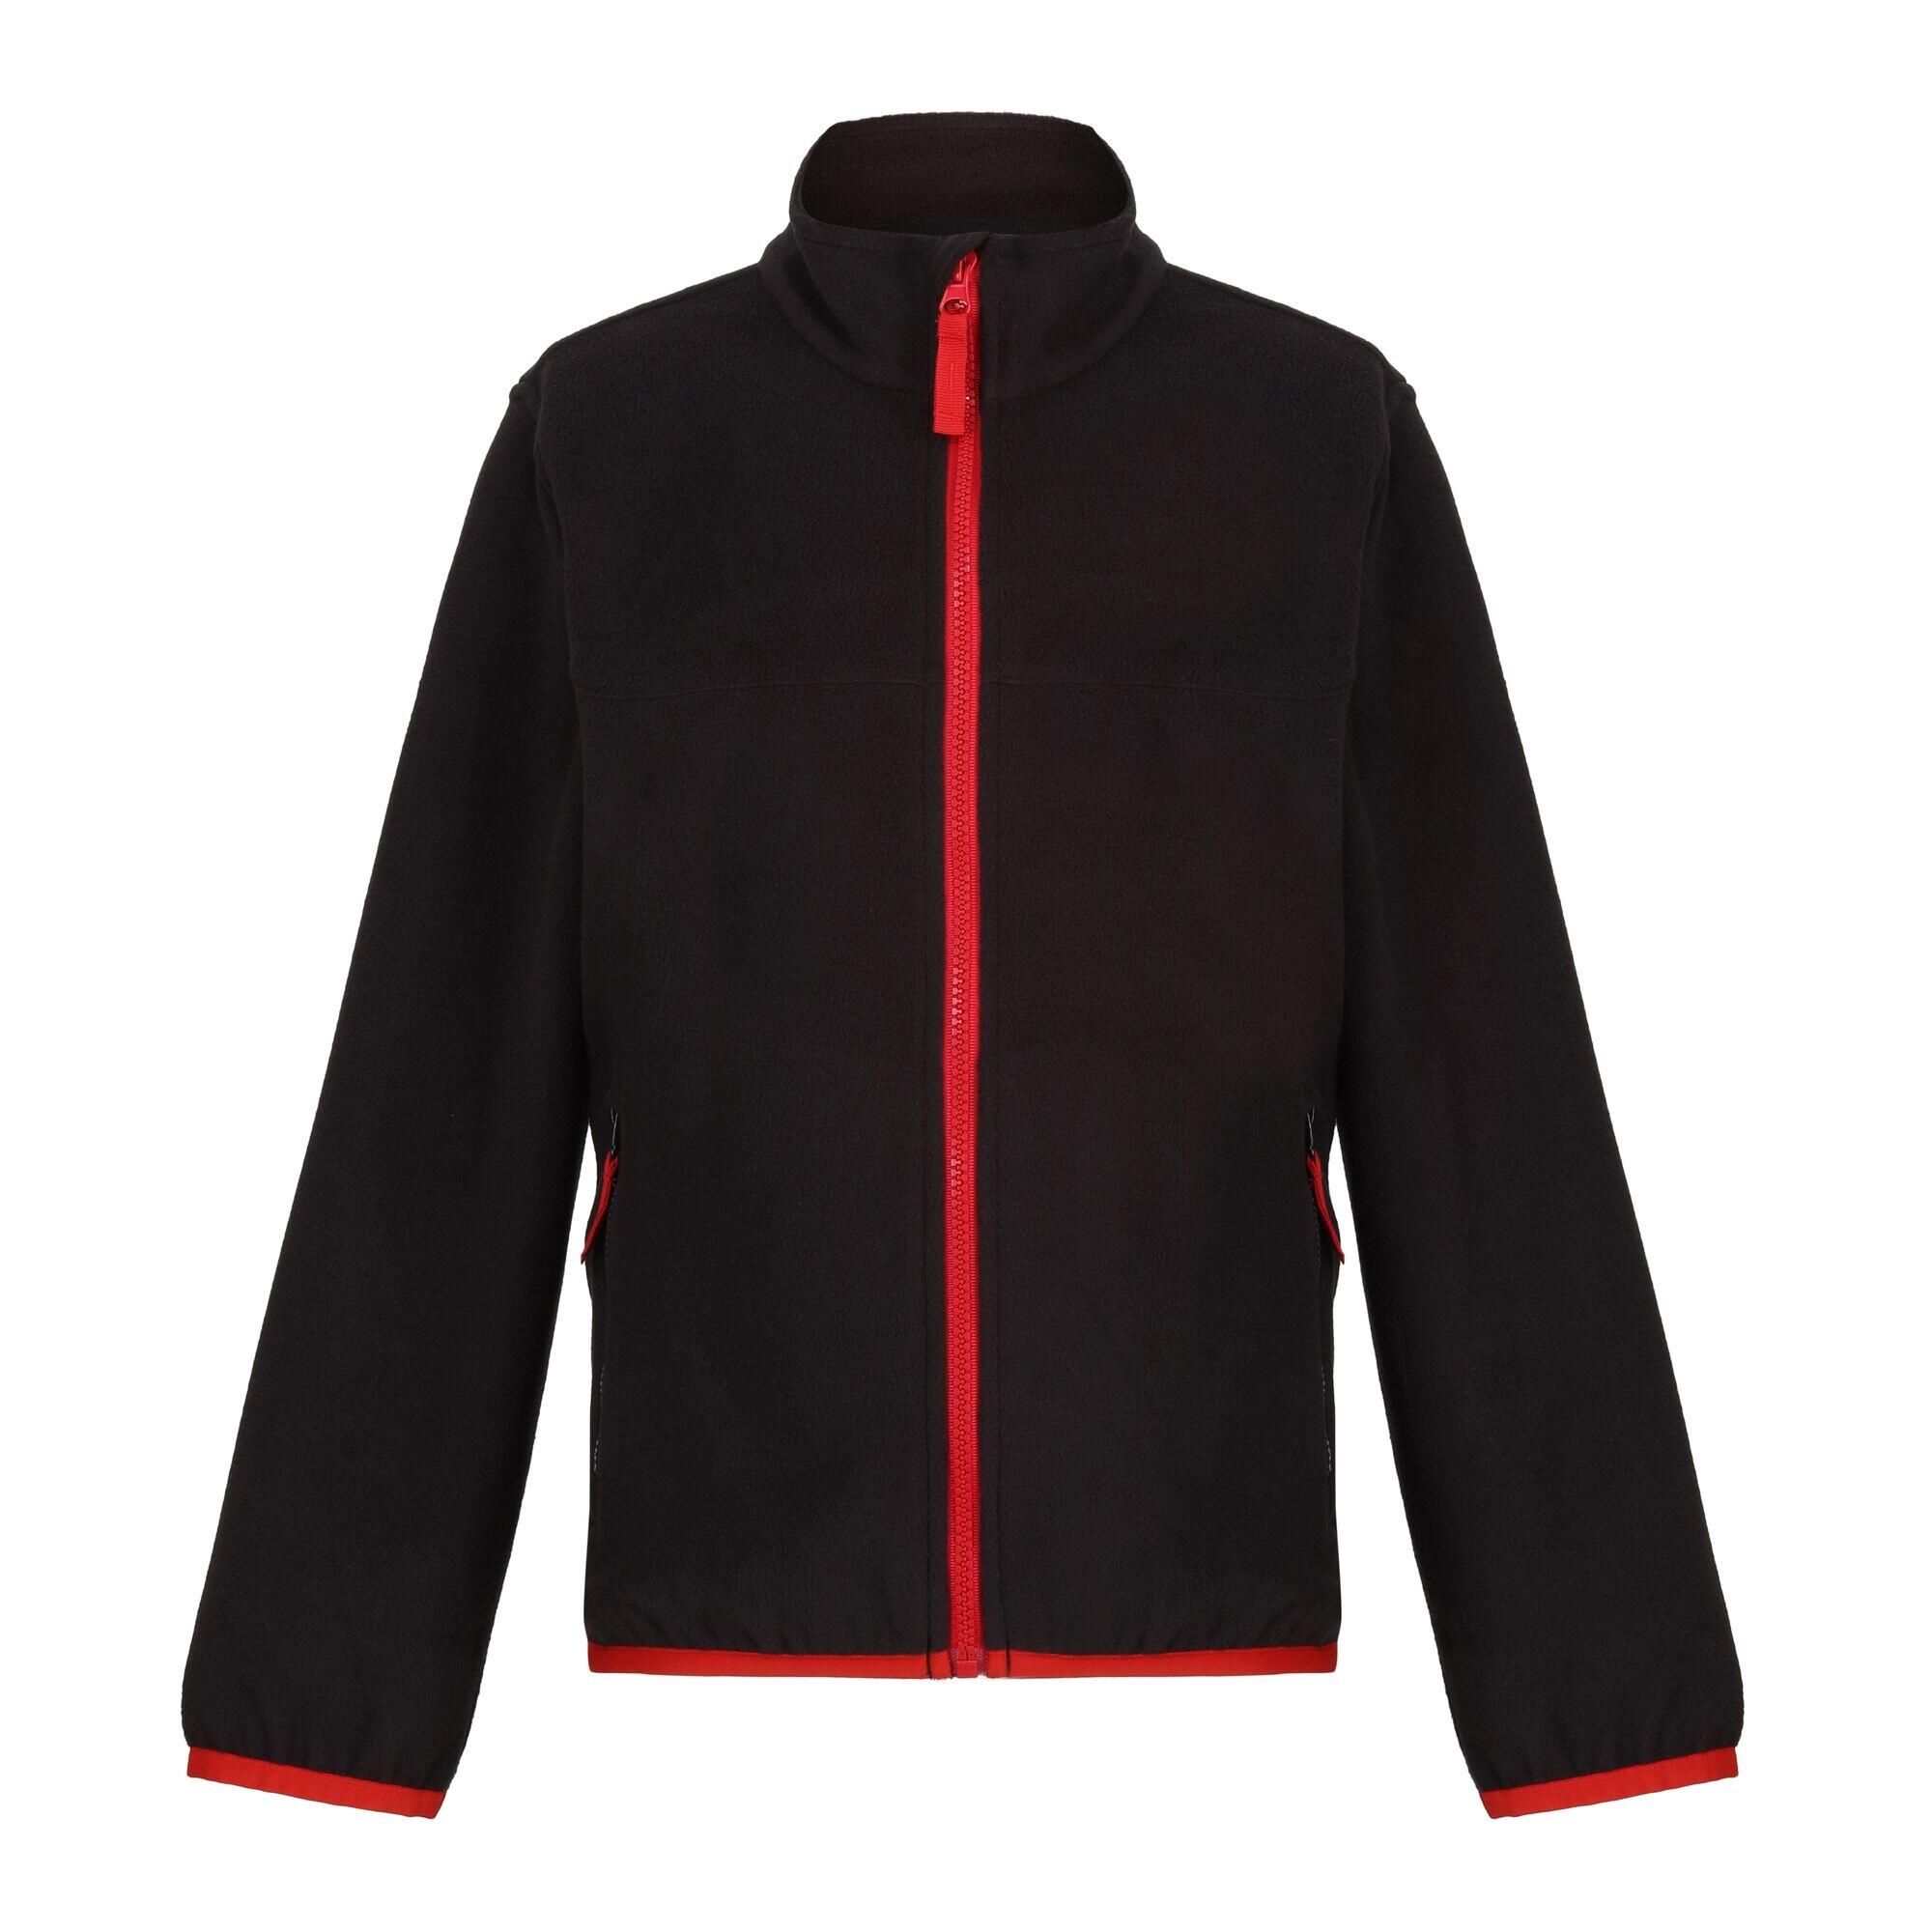 REGATTA Childrens/Kids Microfleece Full Zip Fleece Jacket (Black)